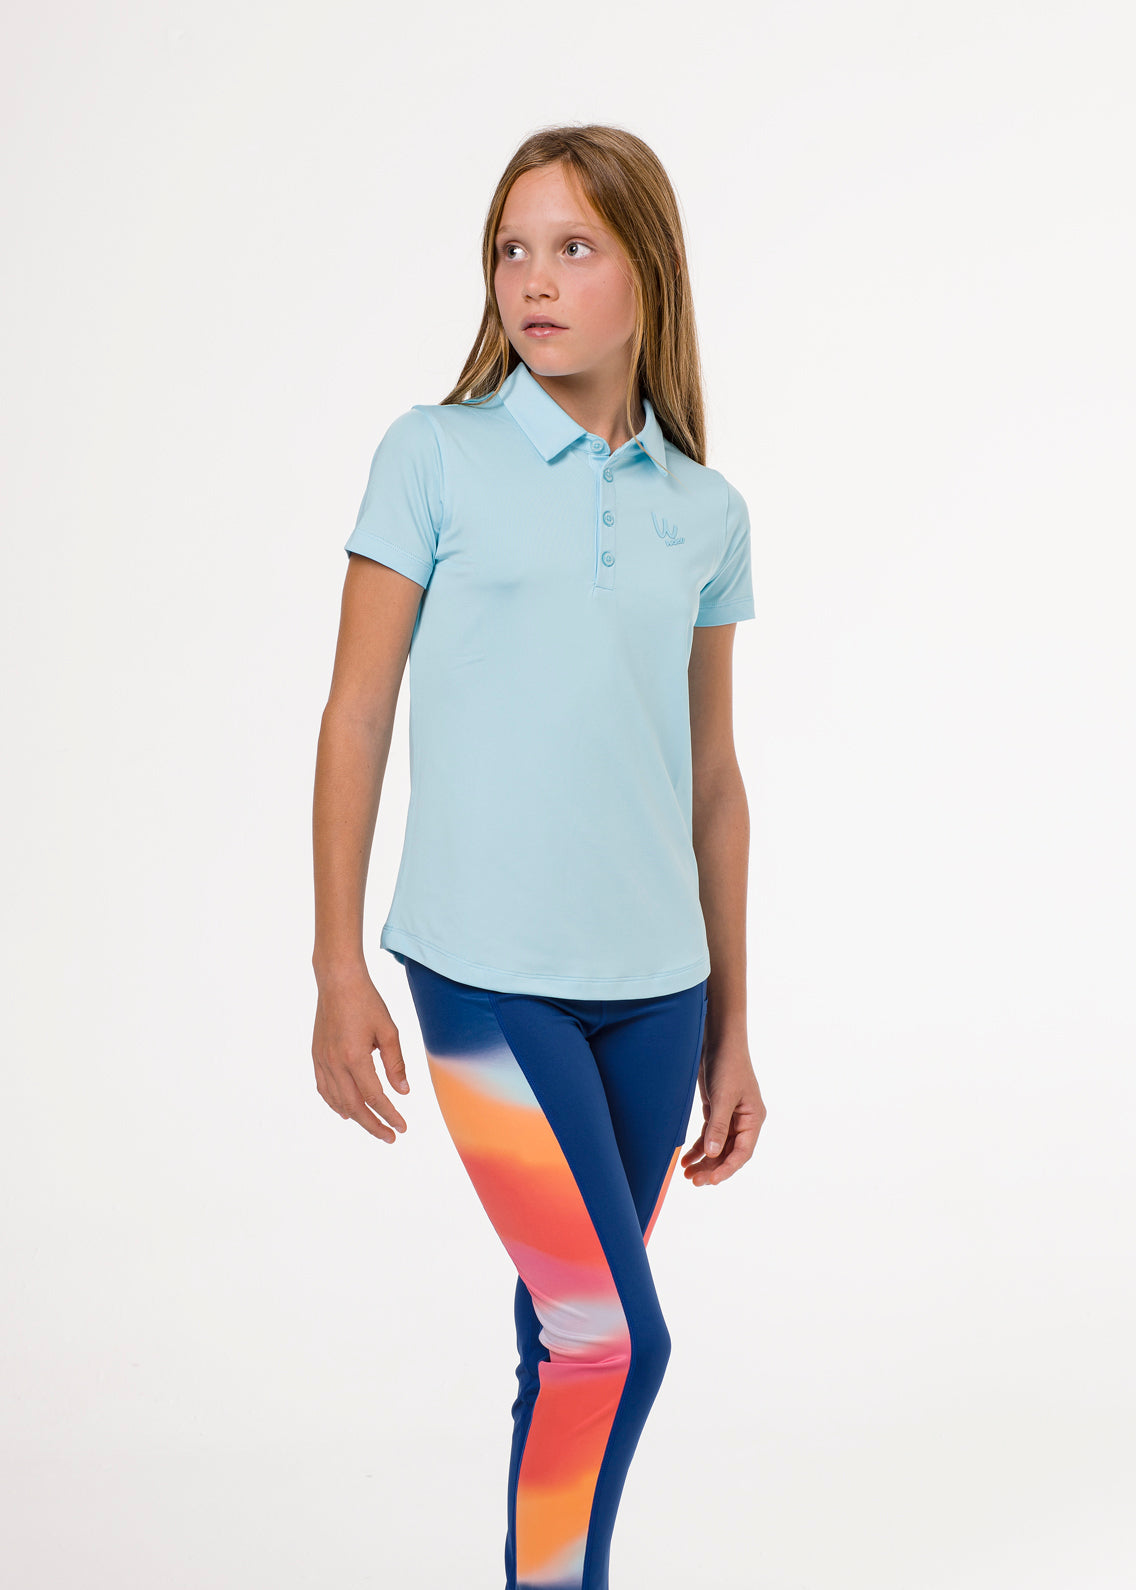 Light blue golf polo shirt for girls